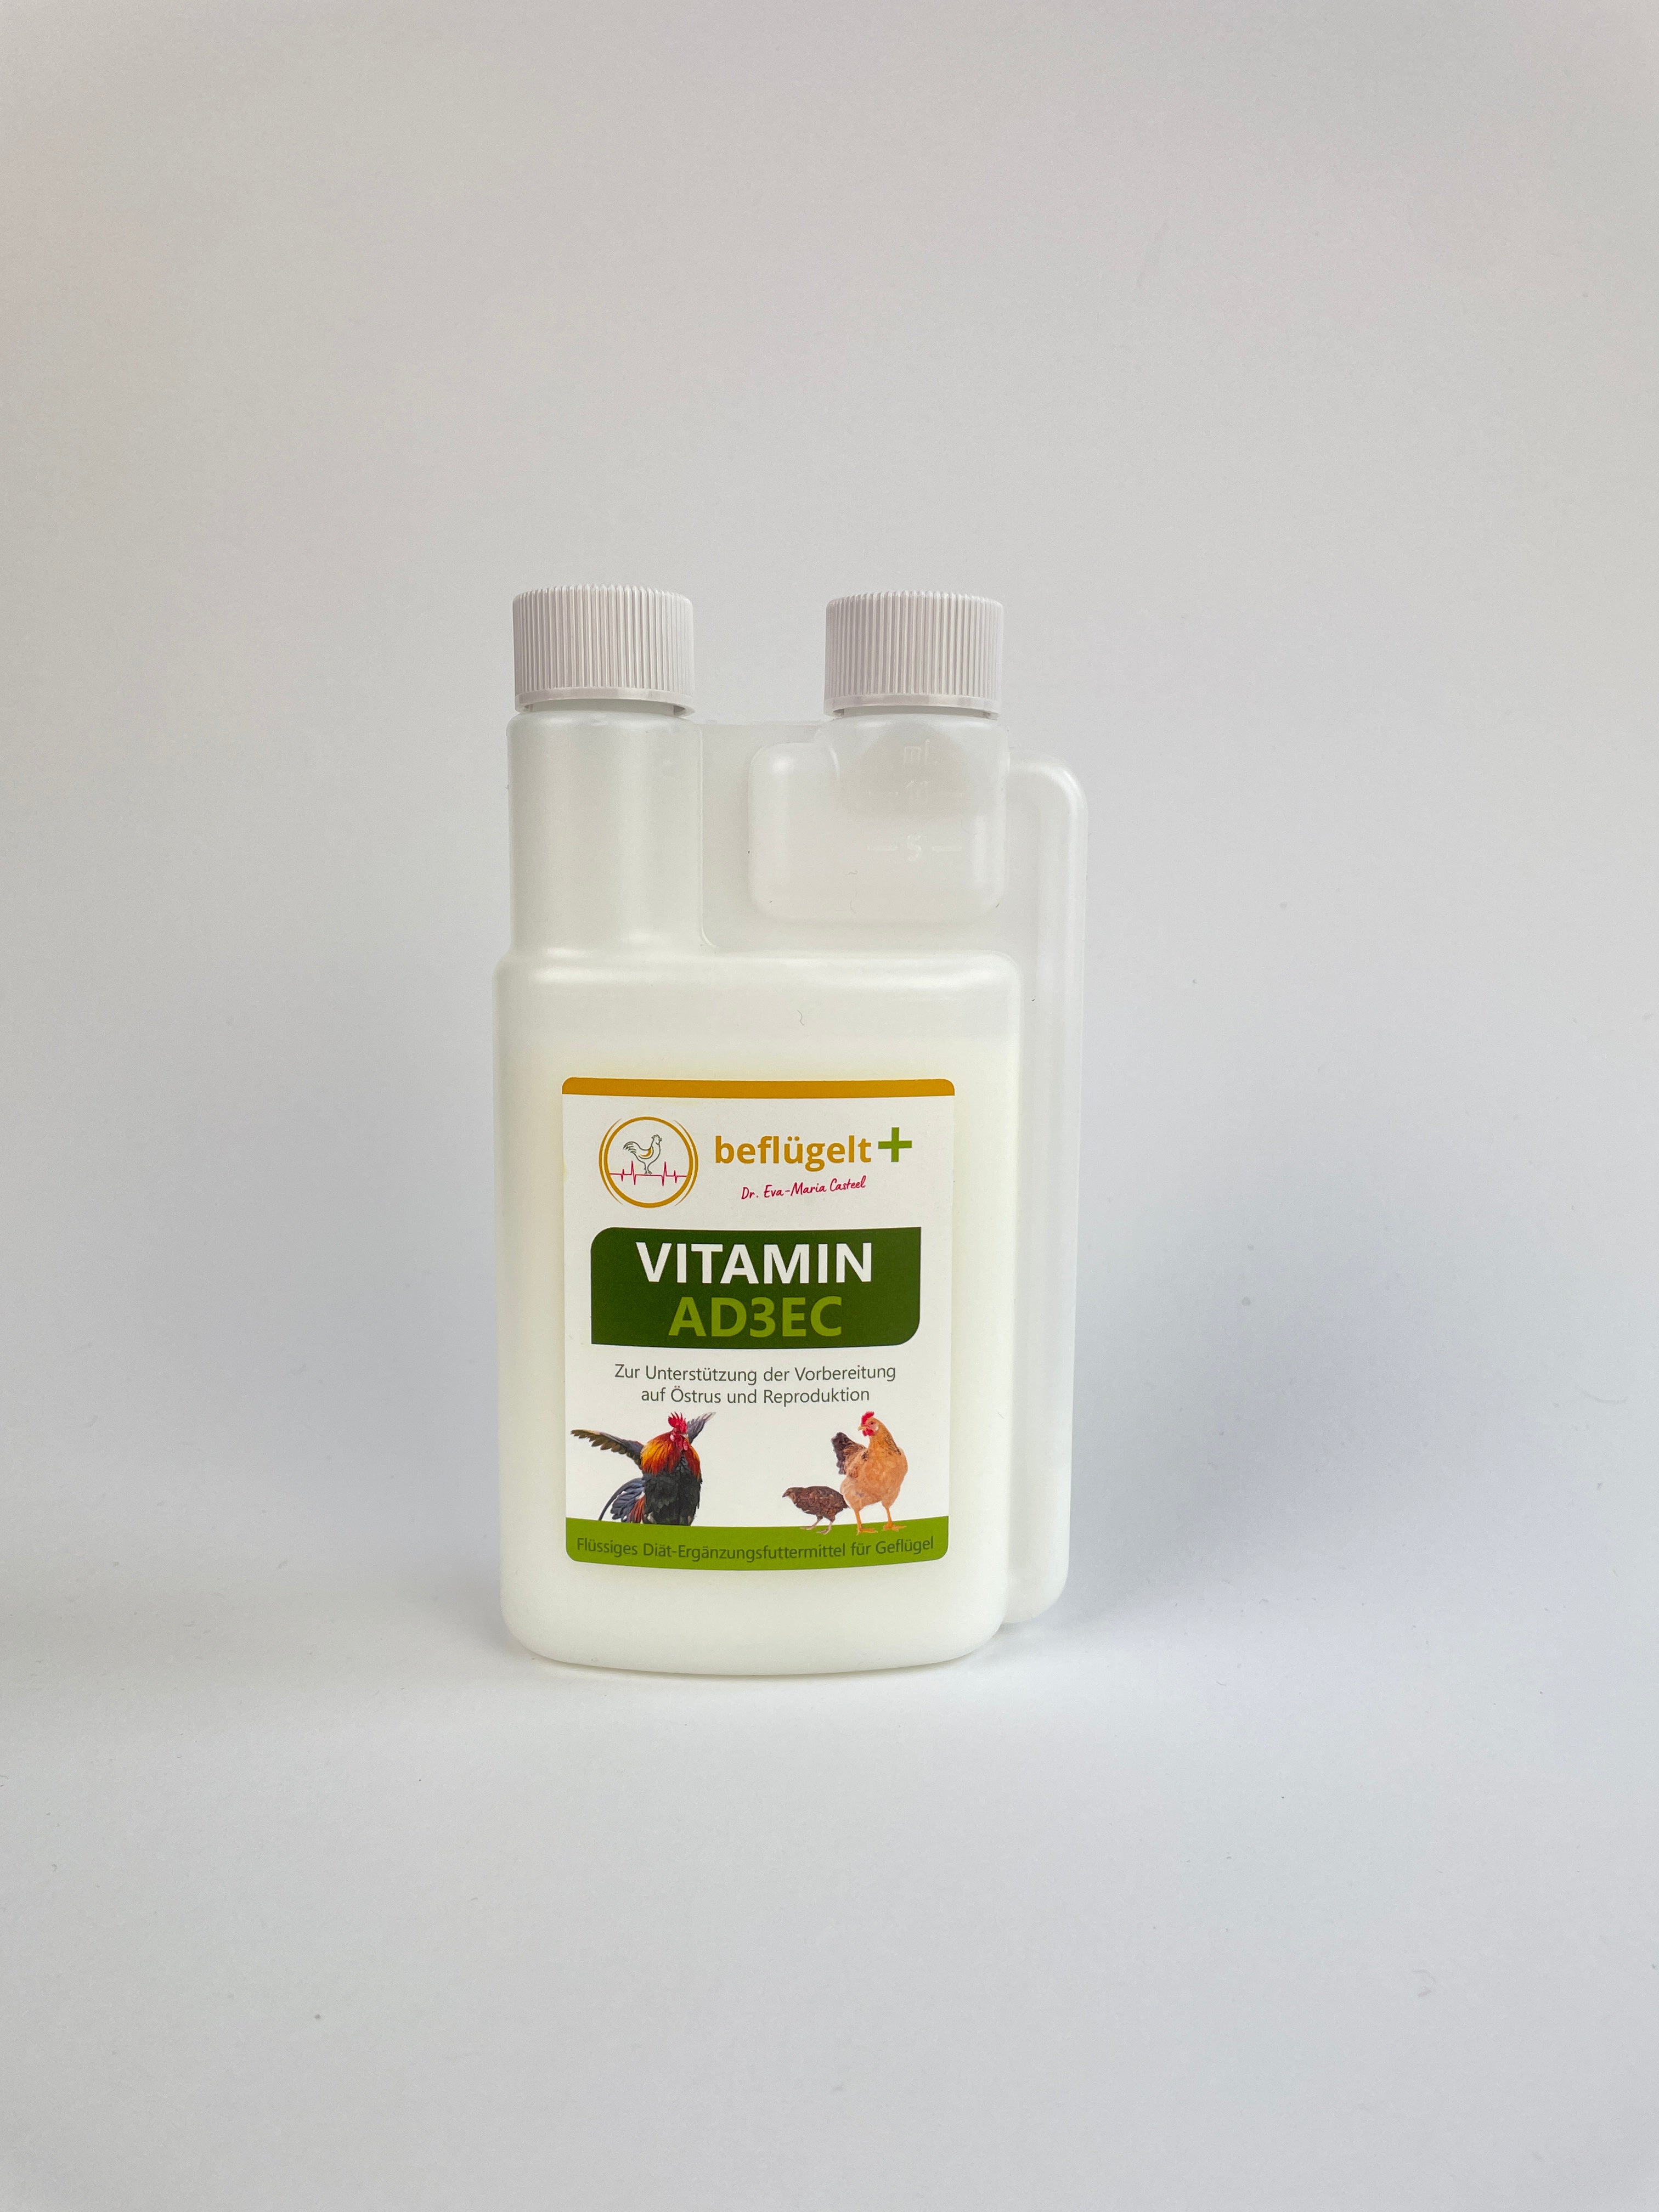 Vitamin AD3EC für Hühner während der Legetätigkeit, des Wachstums und der Regeneration